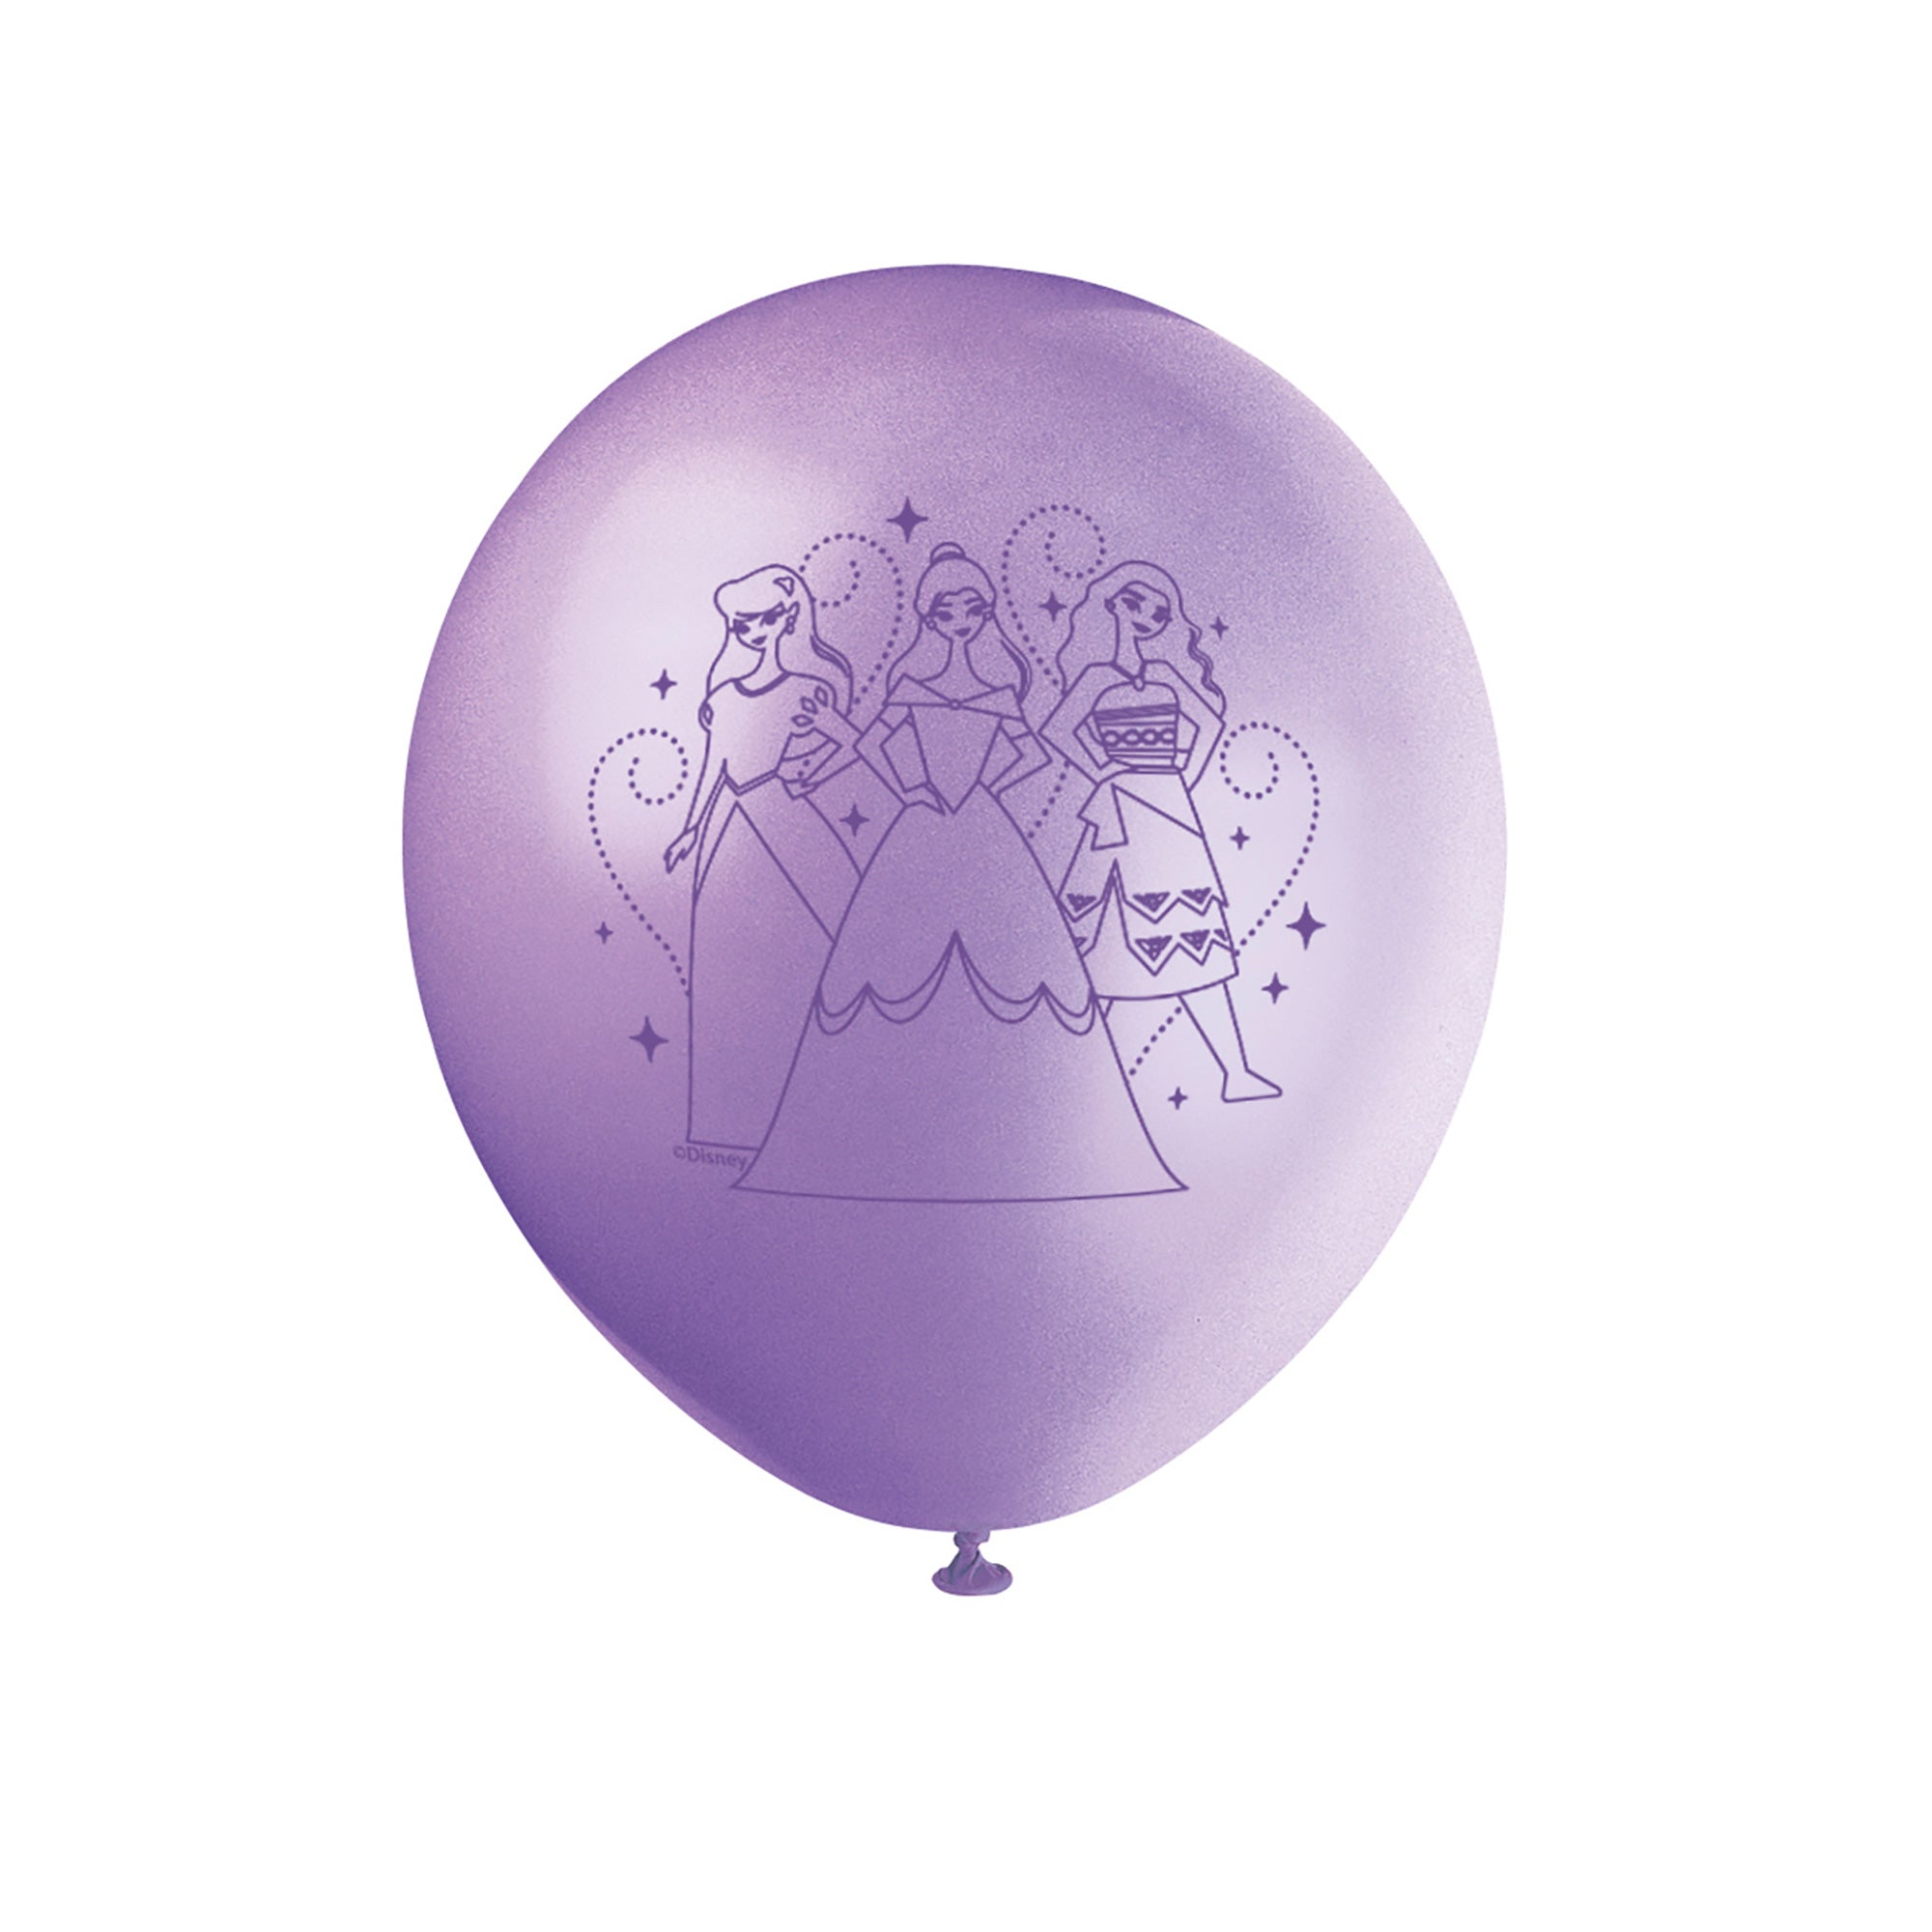 Ballons en latex imprimés de princesse Disney